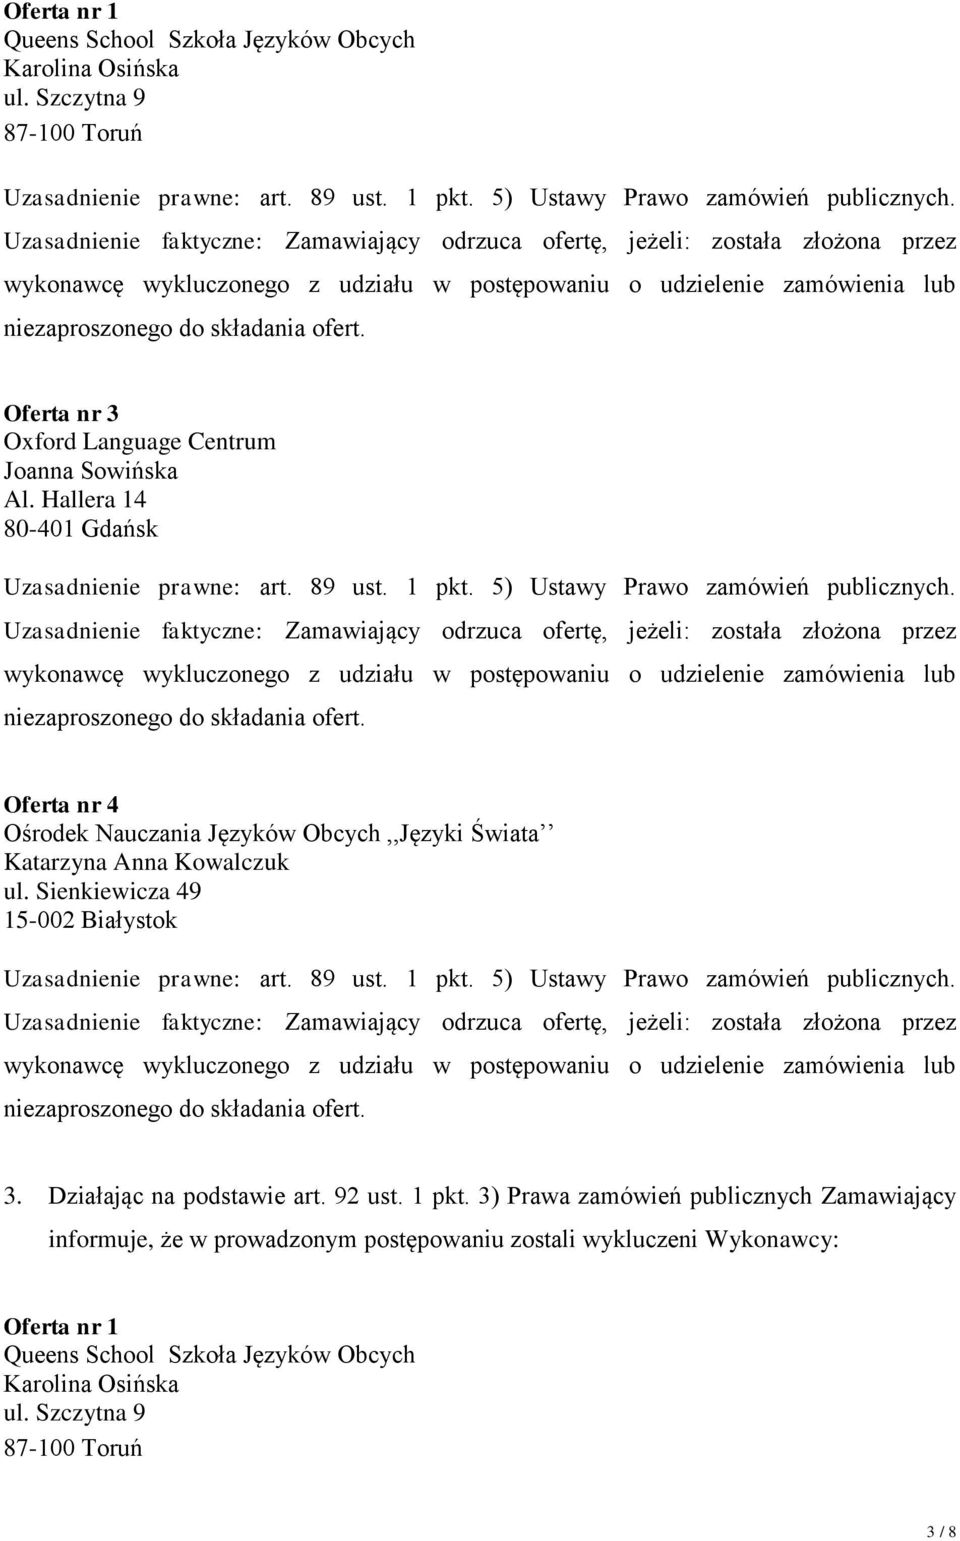 Oferta nr 3 Oxford Language Centrum Joanna Sowińska Al. Hallera 14 80-401 Gdańsk Uzasadnienie prawne: art. 89 ust. 1 pkt. 5) Ustawy Prawo zamówień publicznych.